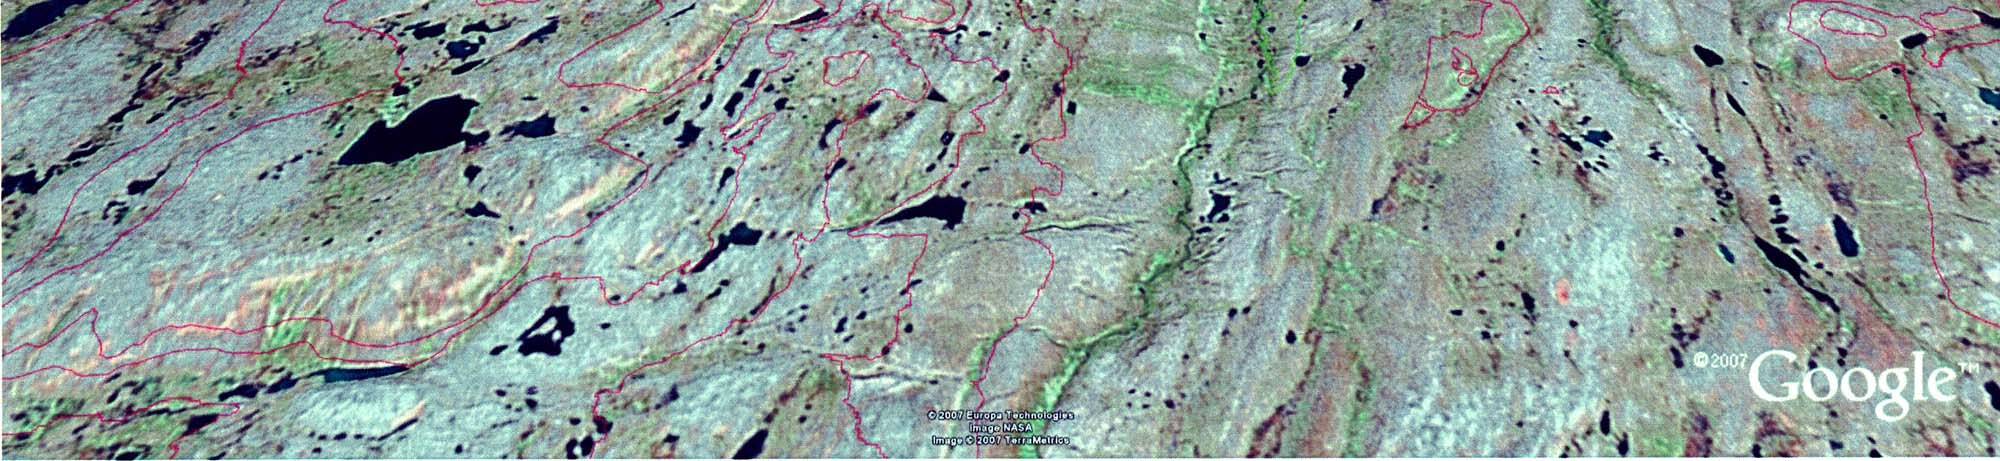 Liite 6c. Pulmankijärven tutkimusalue kolmiulotteisena näkymänä. Liite 4c. Pulmankijärven tutkimusalue kolmiulotteisena näkymänä. Pulmankijärven vedenpinta on vain 14 m merenpinnan yläpuolella.